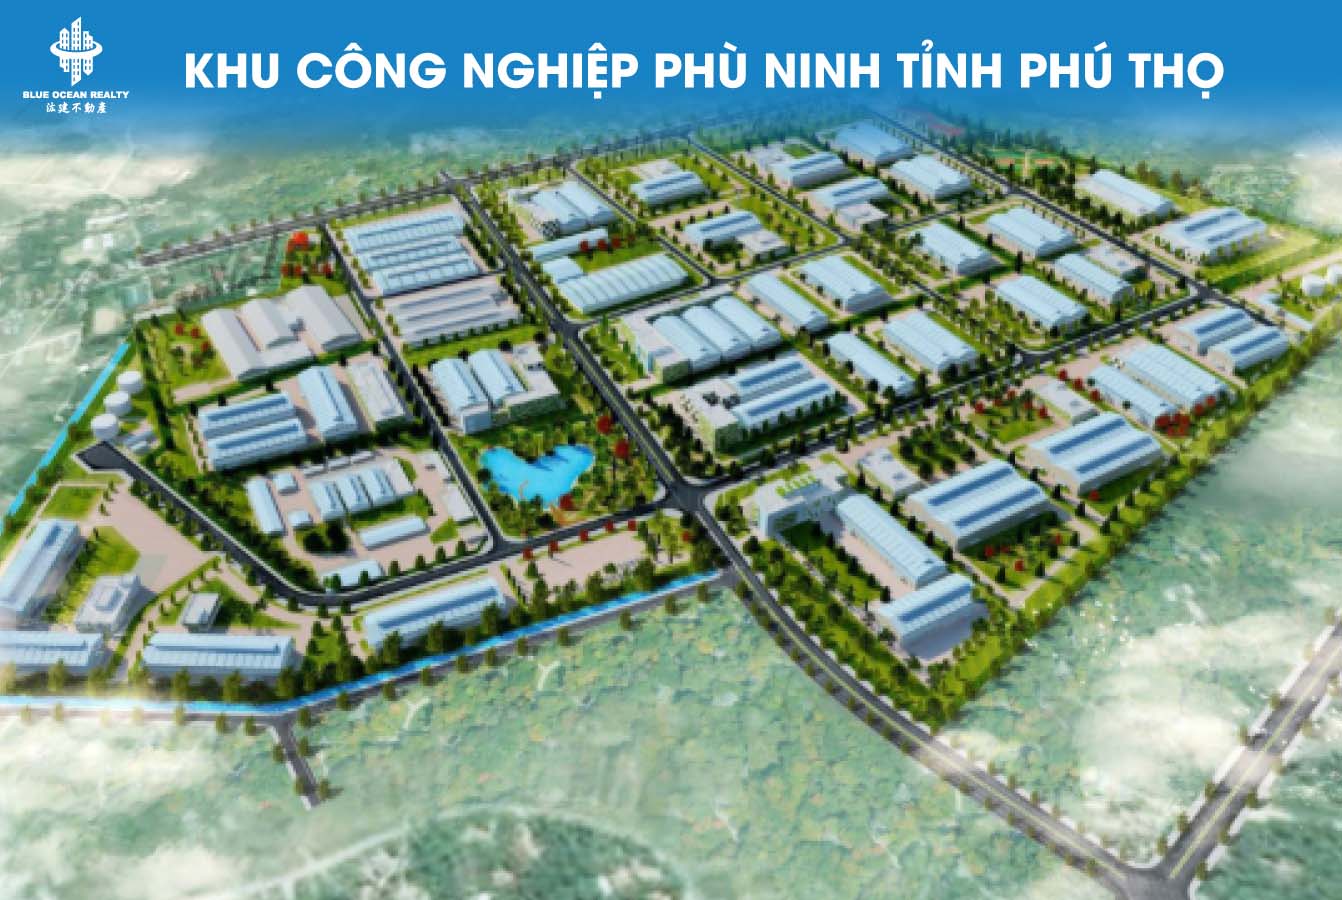 Khu công nghiệp (KCN) Phù Ninh tỉnh Phú Thọ